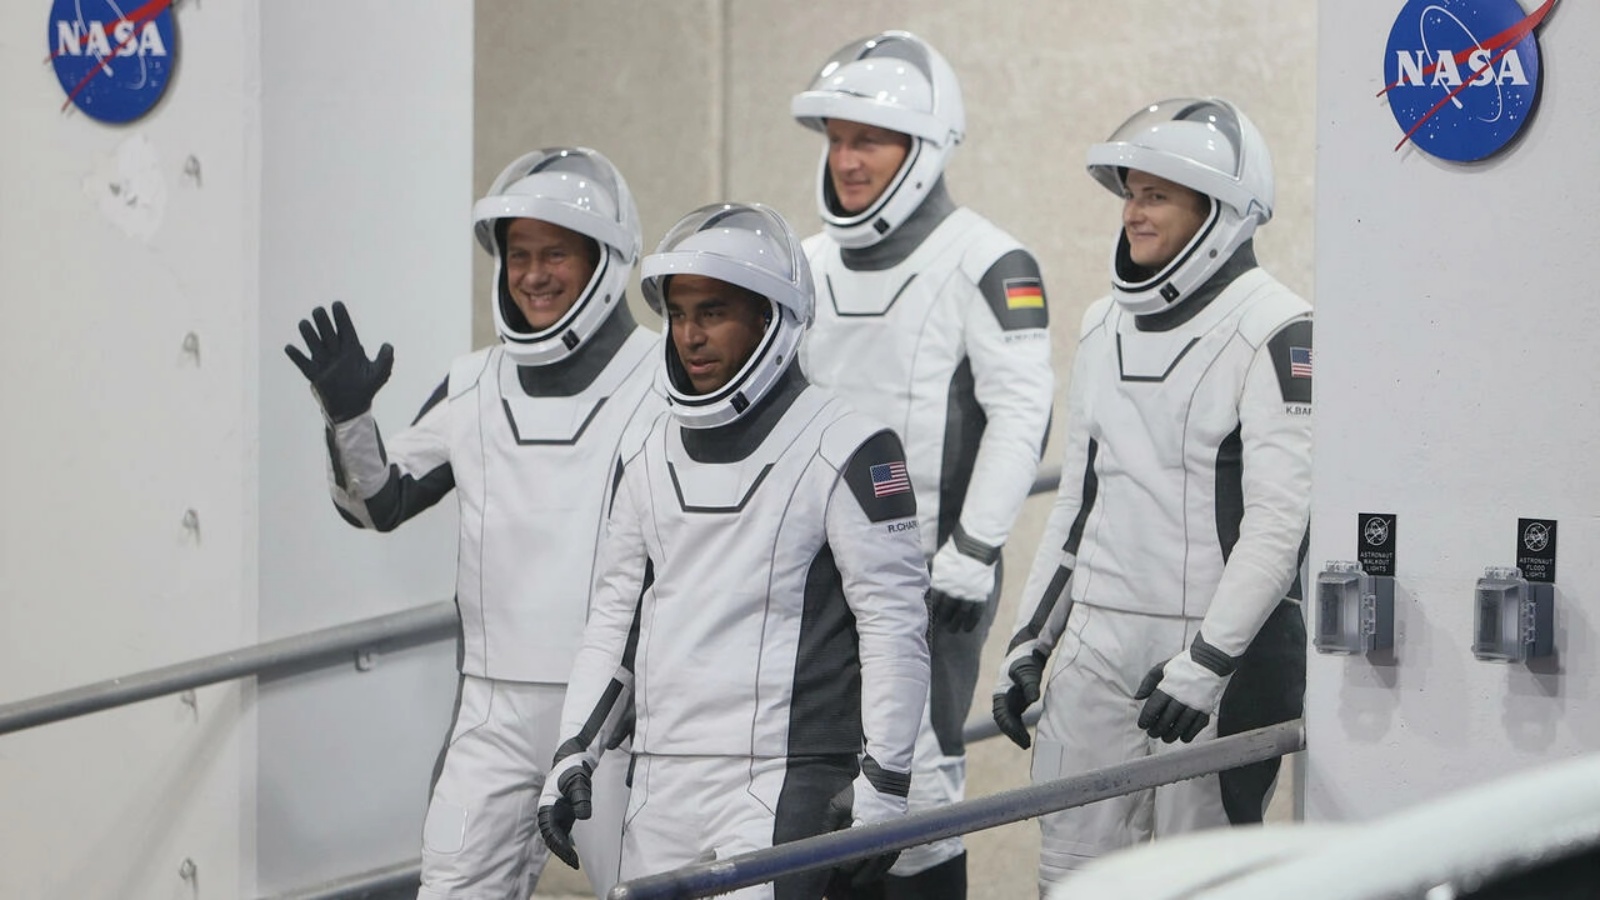 (من اليسار إلى اليمين) رواد فضاء ناسا توم مارشبورن وراجا شاري و (من اليسار إلى اليمين) رائد فضاء وكالة الفضاء الأوروبية ماتياس مورير من ألمانيا ورائدة فضاء ناسا كايلا بارون أثناء استعدادهم للانطلاق لمحطة الفضاء الدولية